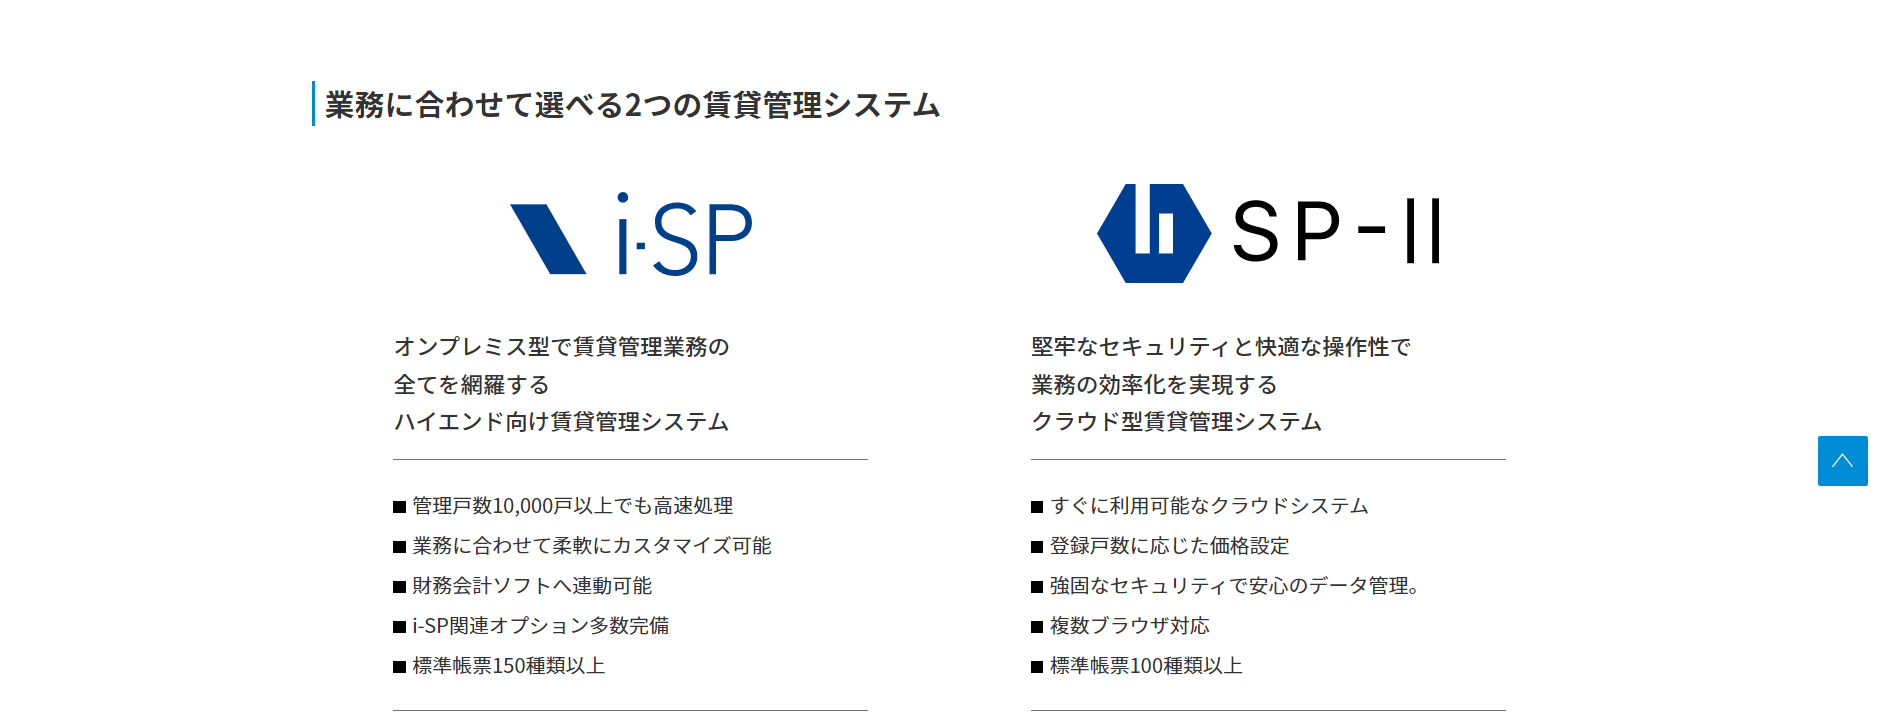 i-SP/SP－Ⅱ